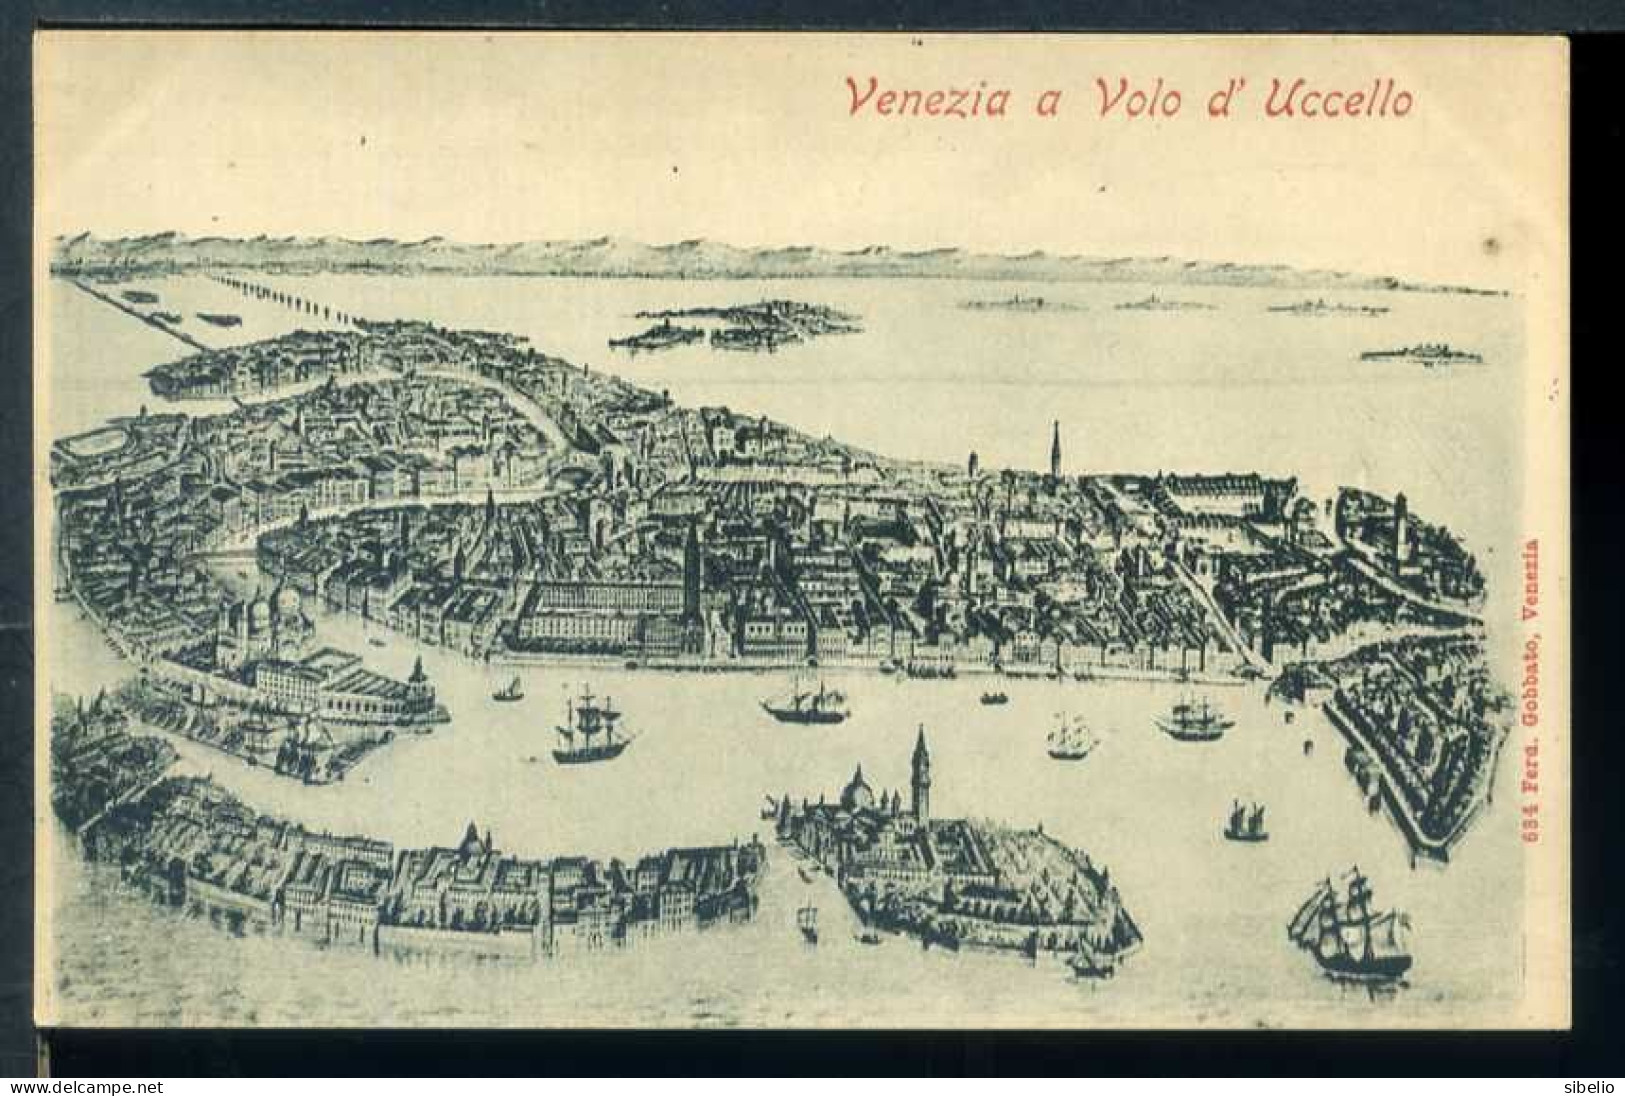 VENEZIA - dieci cartoline antiche - rif. 4